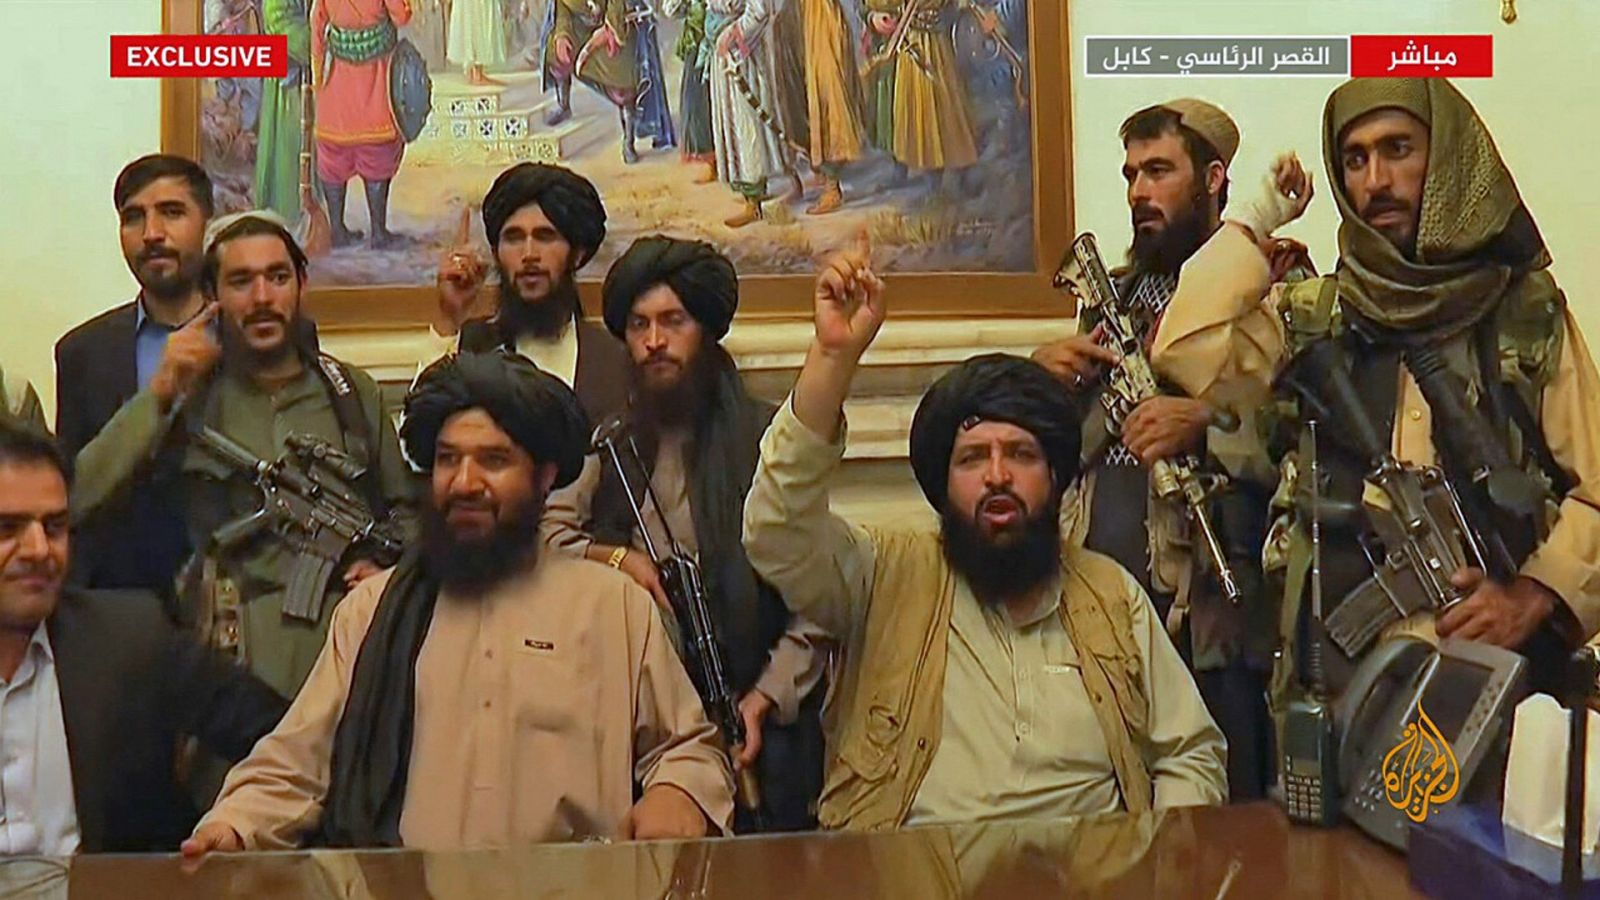 Imagen tomada de la cadena de televisión catarí Al Jazeera: talibanes toman el control del palacio presidencial en Kabul, Afganistán. AL JAZEERA / AFP